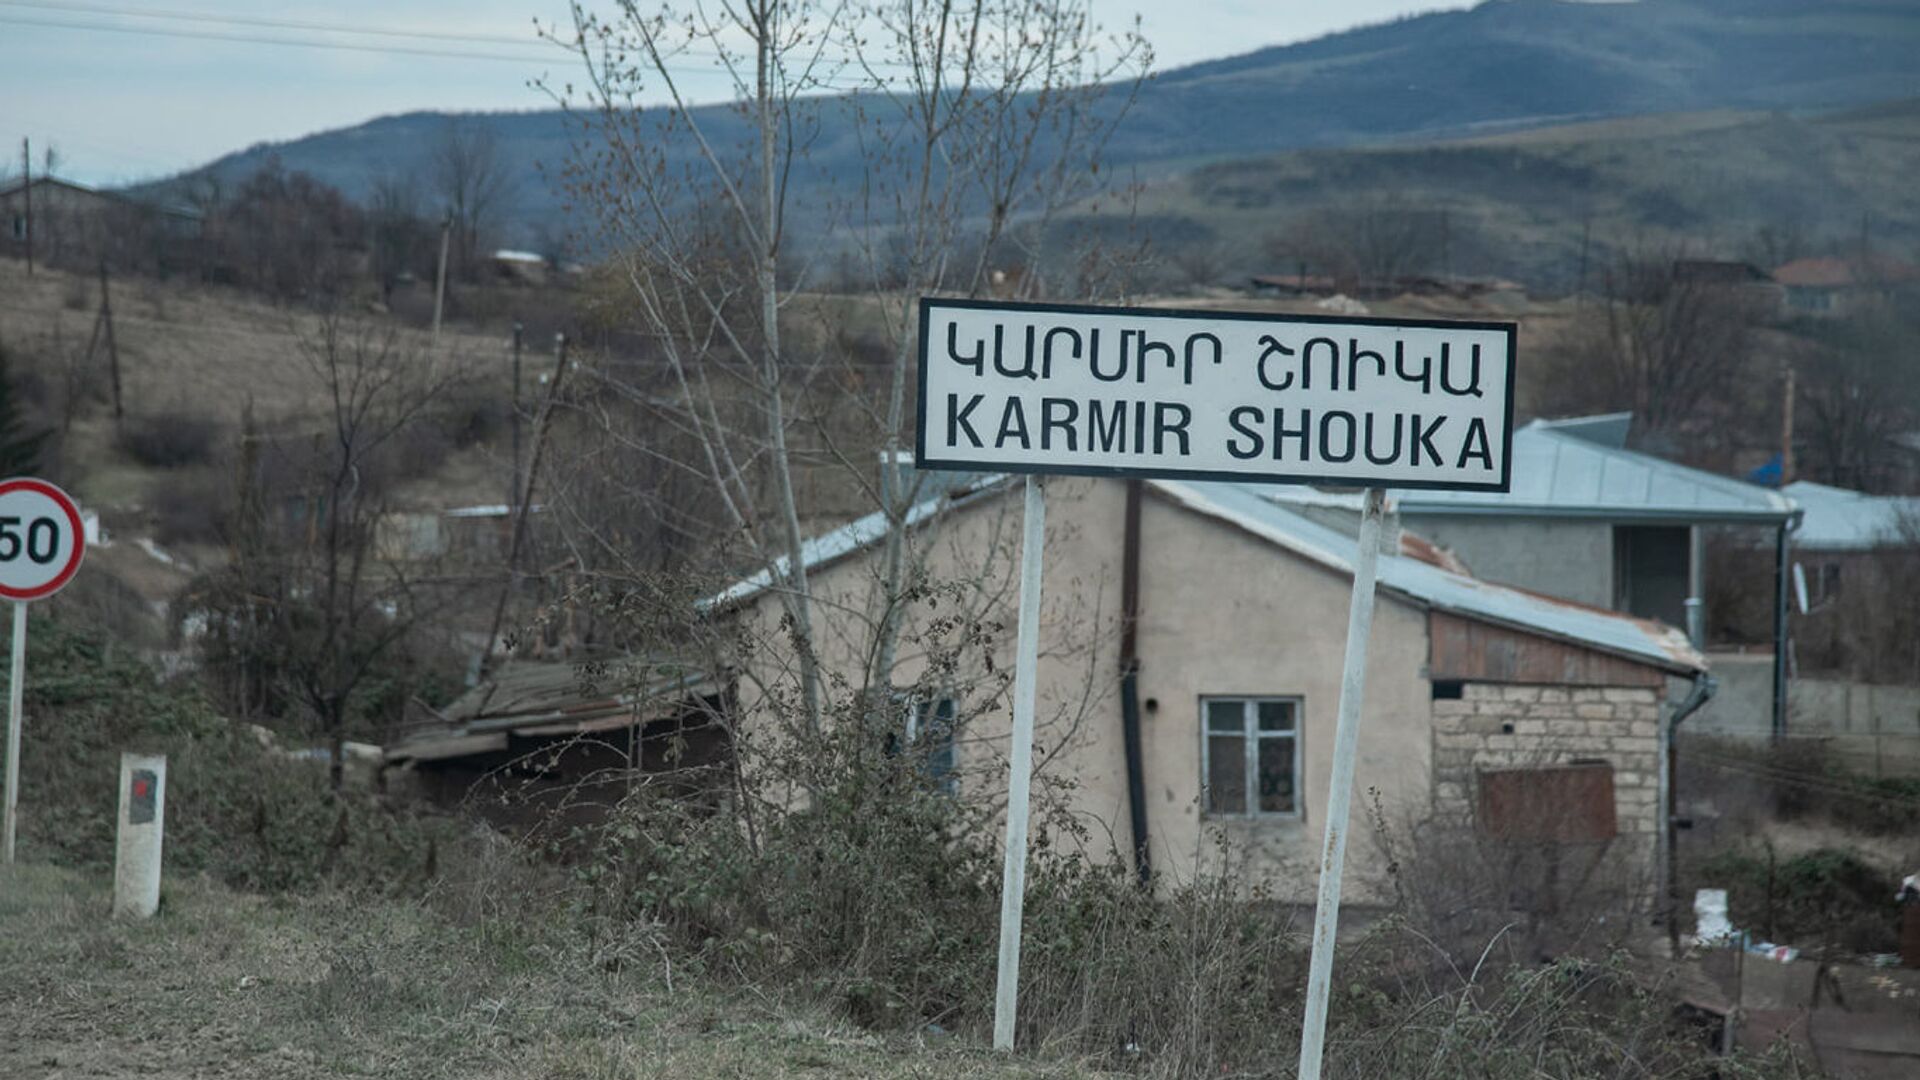 Село Кармир Шука в Карабахе - Sputnik Արմենիա, 1920, 04.12.2021